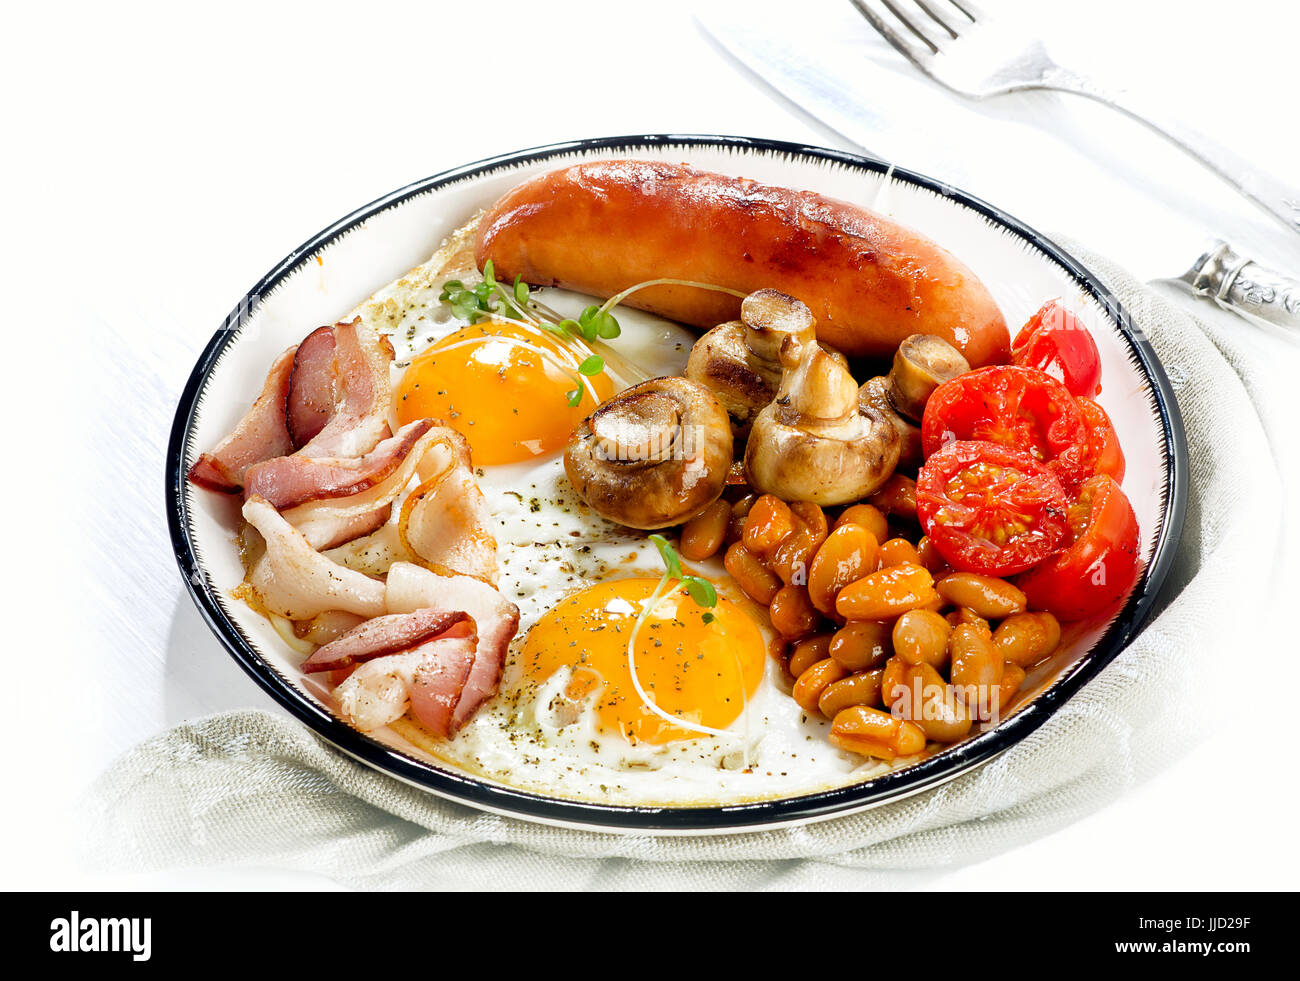 Prima colazione Inglese con uovo fritto, fagioli, pomodori, funghi, pancetta e salsicce su una piastra bianca Foto Stock